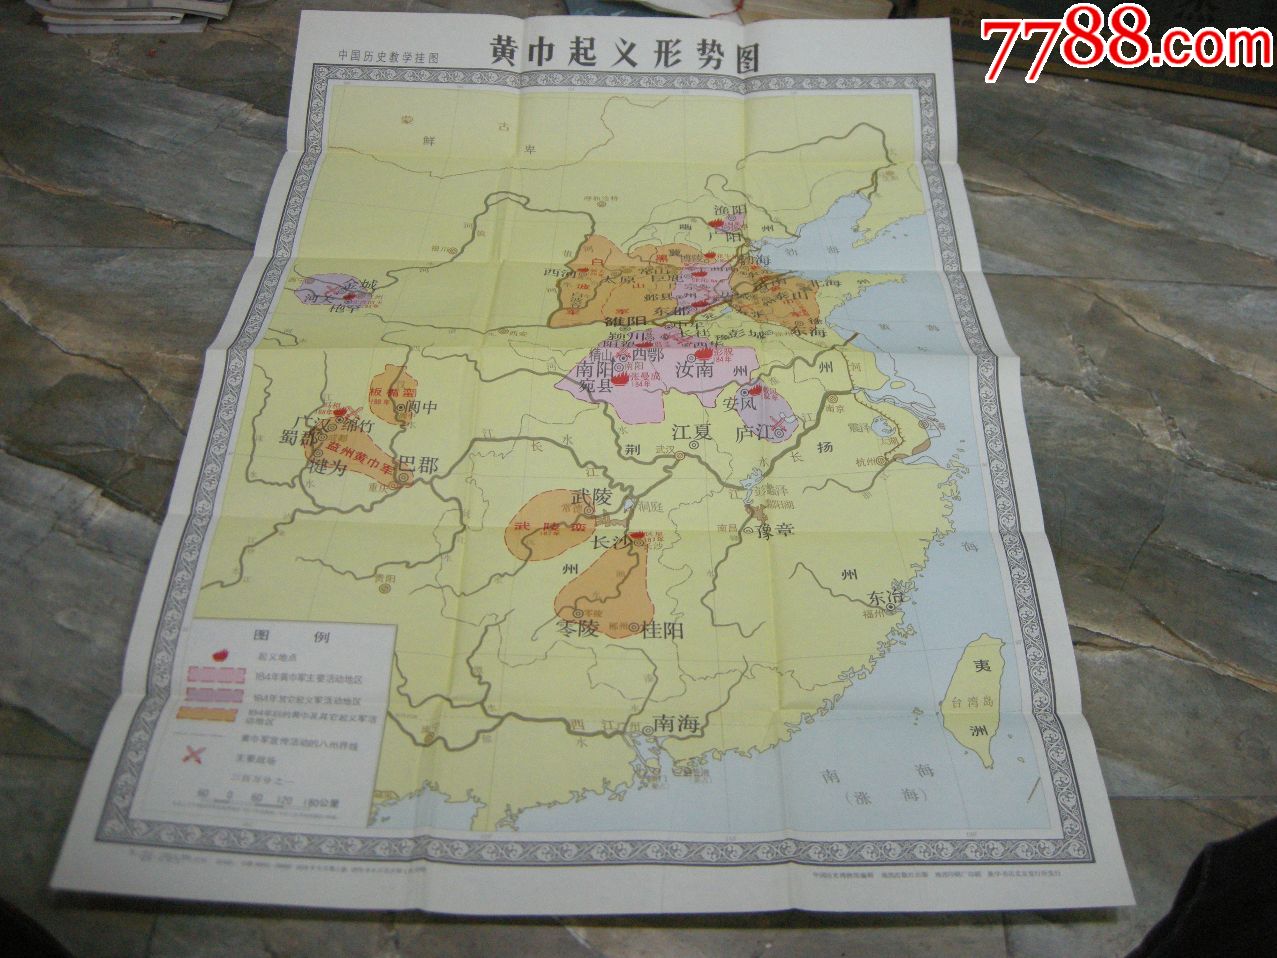 50年代地图,挂图;1978年一版一印《黄巾起义形势图》